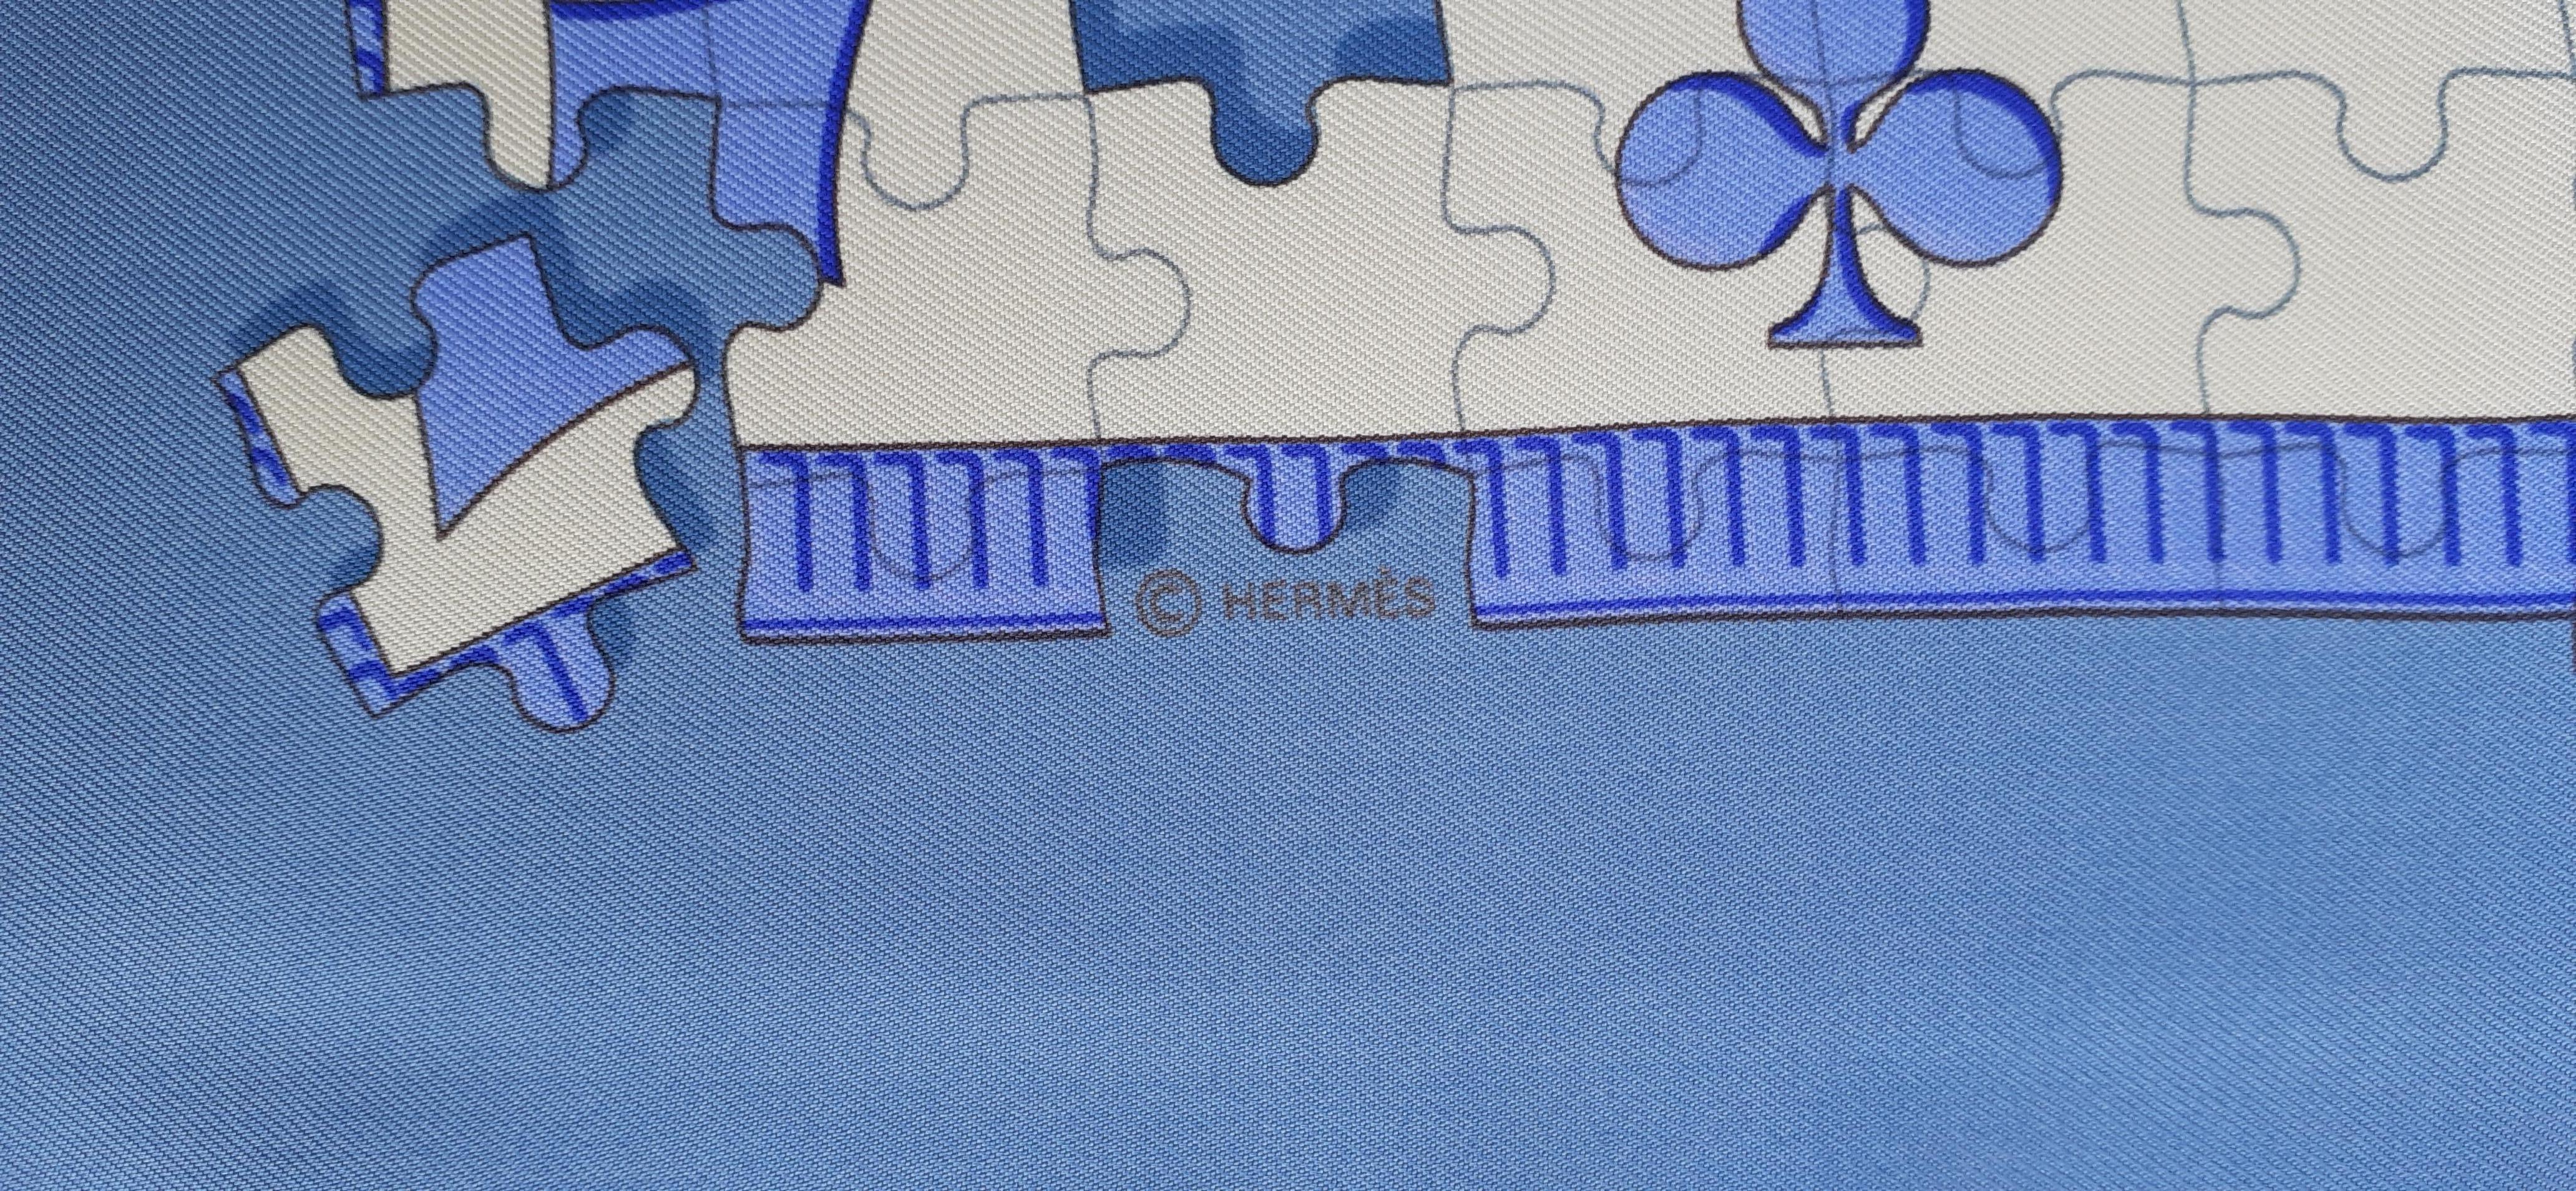 Hermès Silk Scarf Faites Vos Jeux Blue Karen Petrossian 90 cm Rare For Sale 6